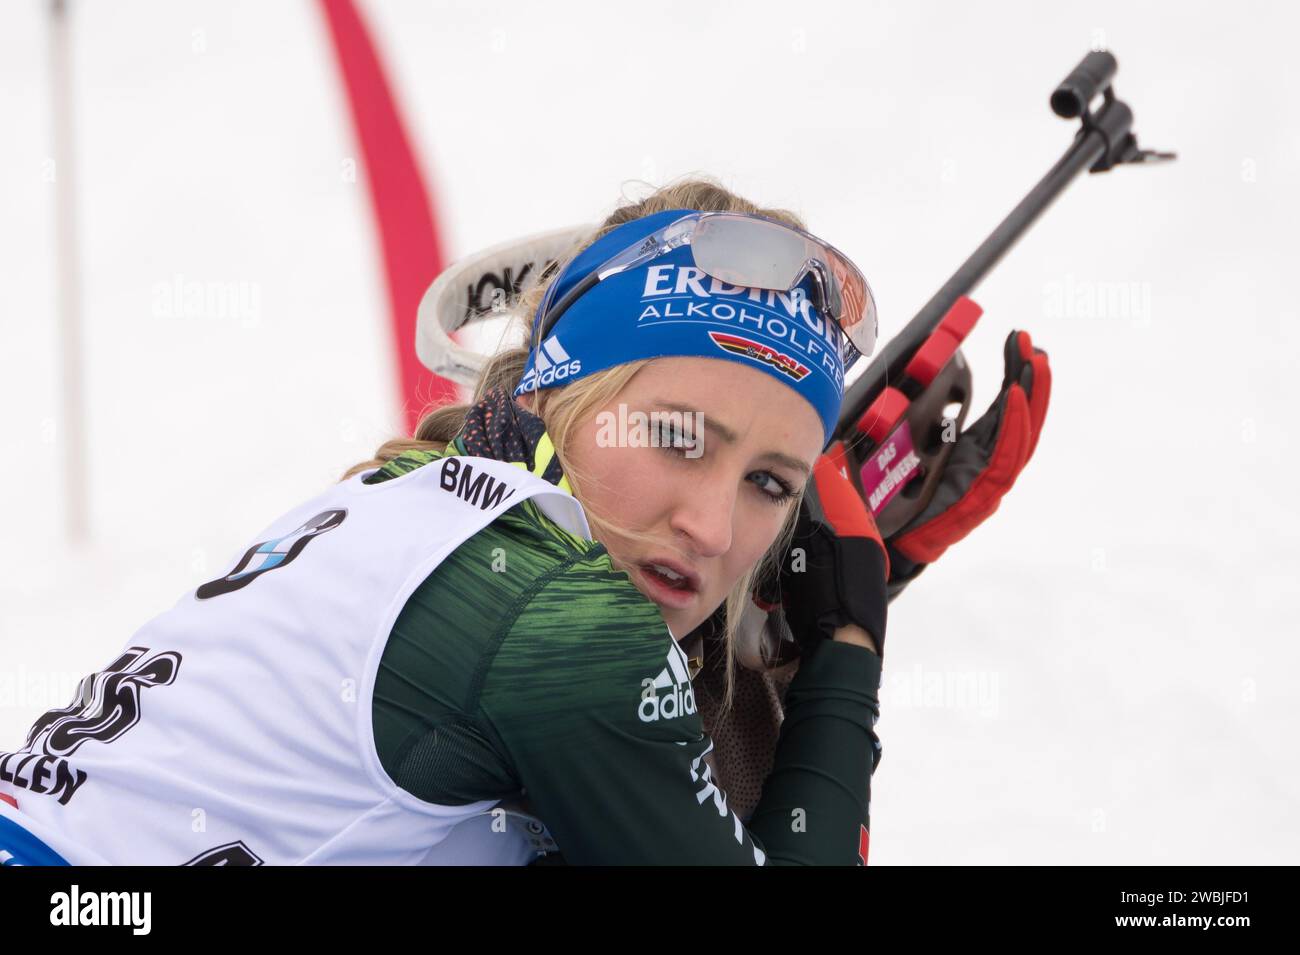 WEIDEL Anna GER Biathlon Welt Cup 10 KM Verfolgung der Frauen à Hochfilzen, Österreich am 15.12.2018 Banque D'Images